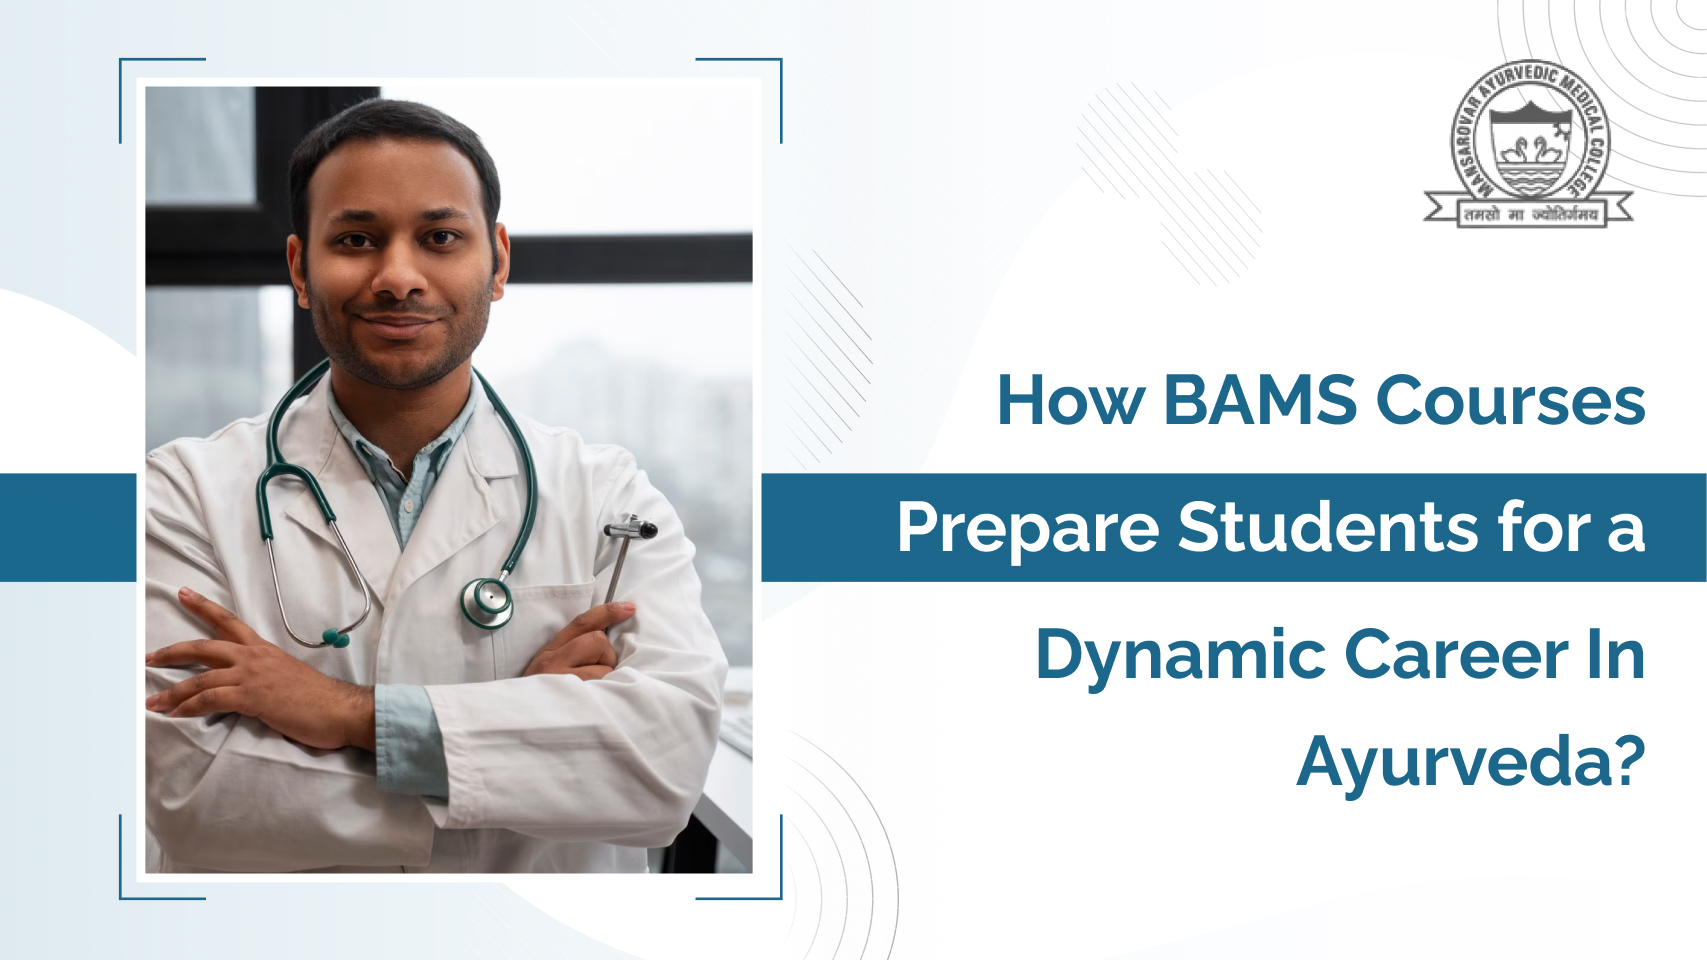 BAMS Courses for Dynamic Career